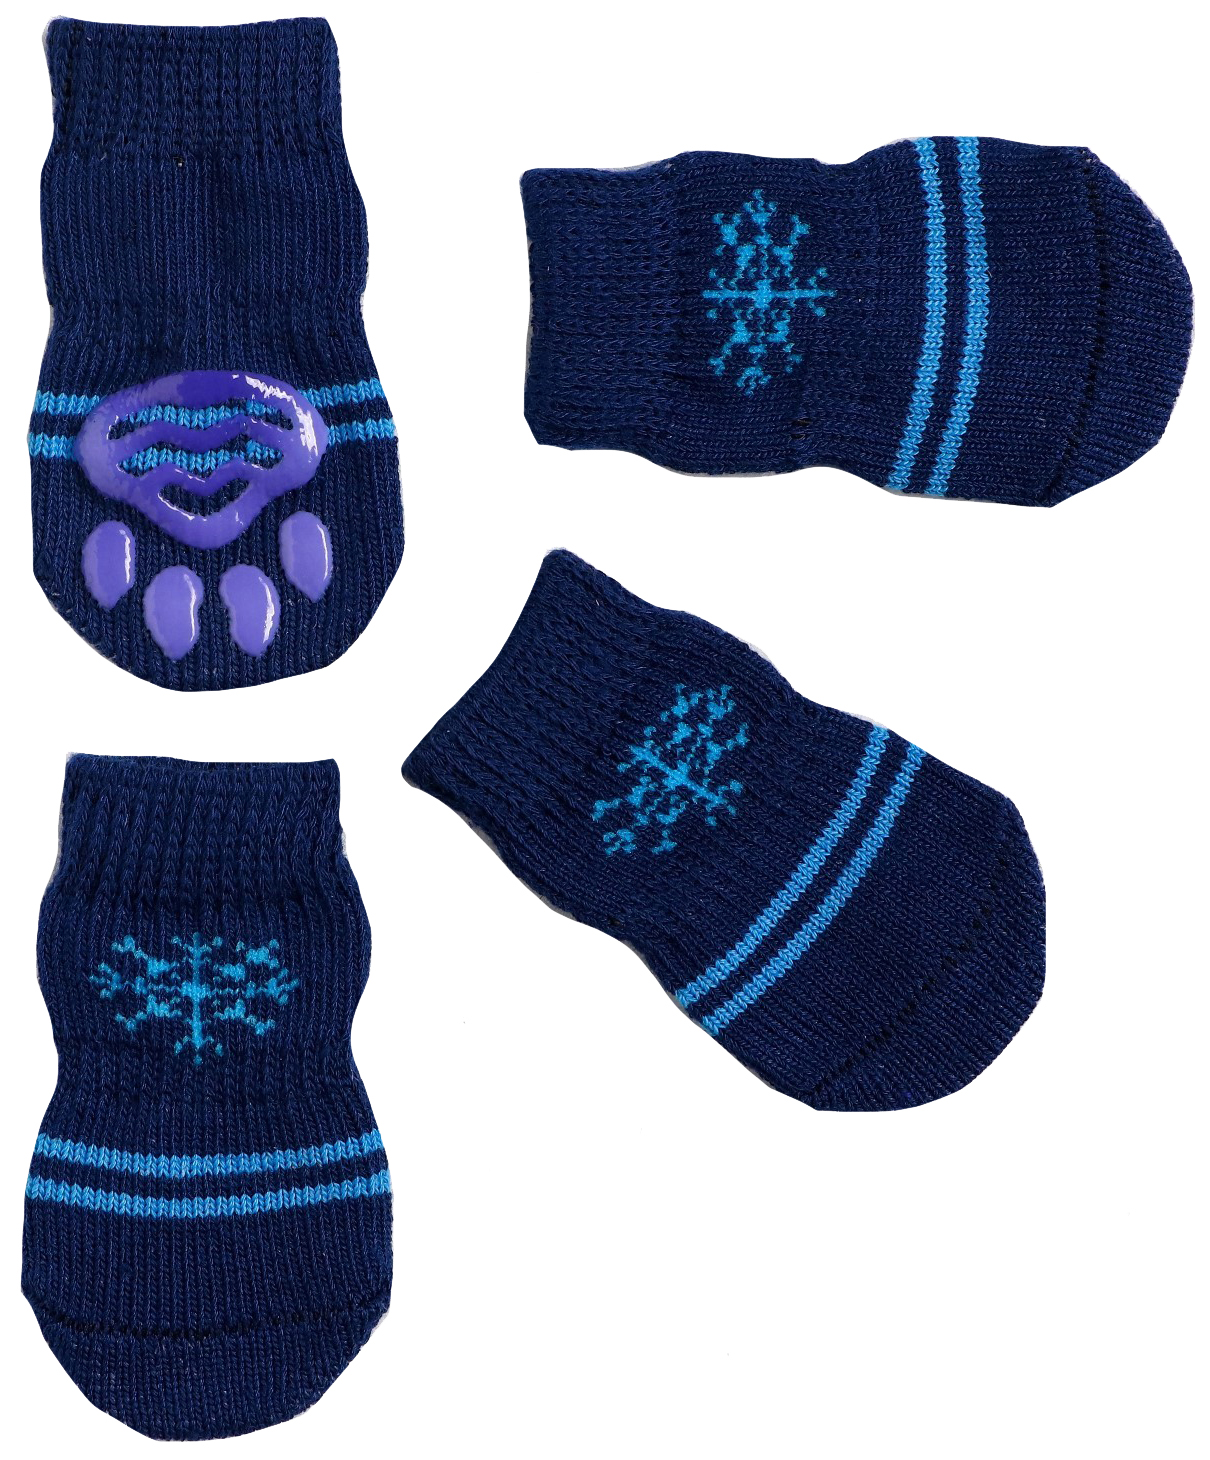 Носки нескользящие Пижон Снежинка, размер М (3/4 x 7 см), набор 4 шт, тёмно-синие